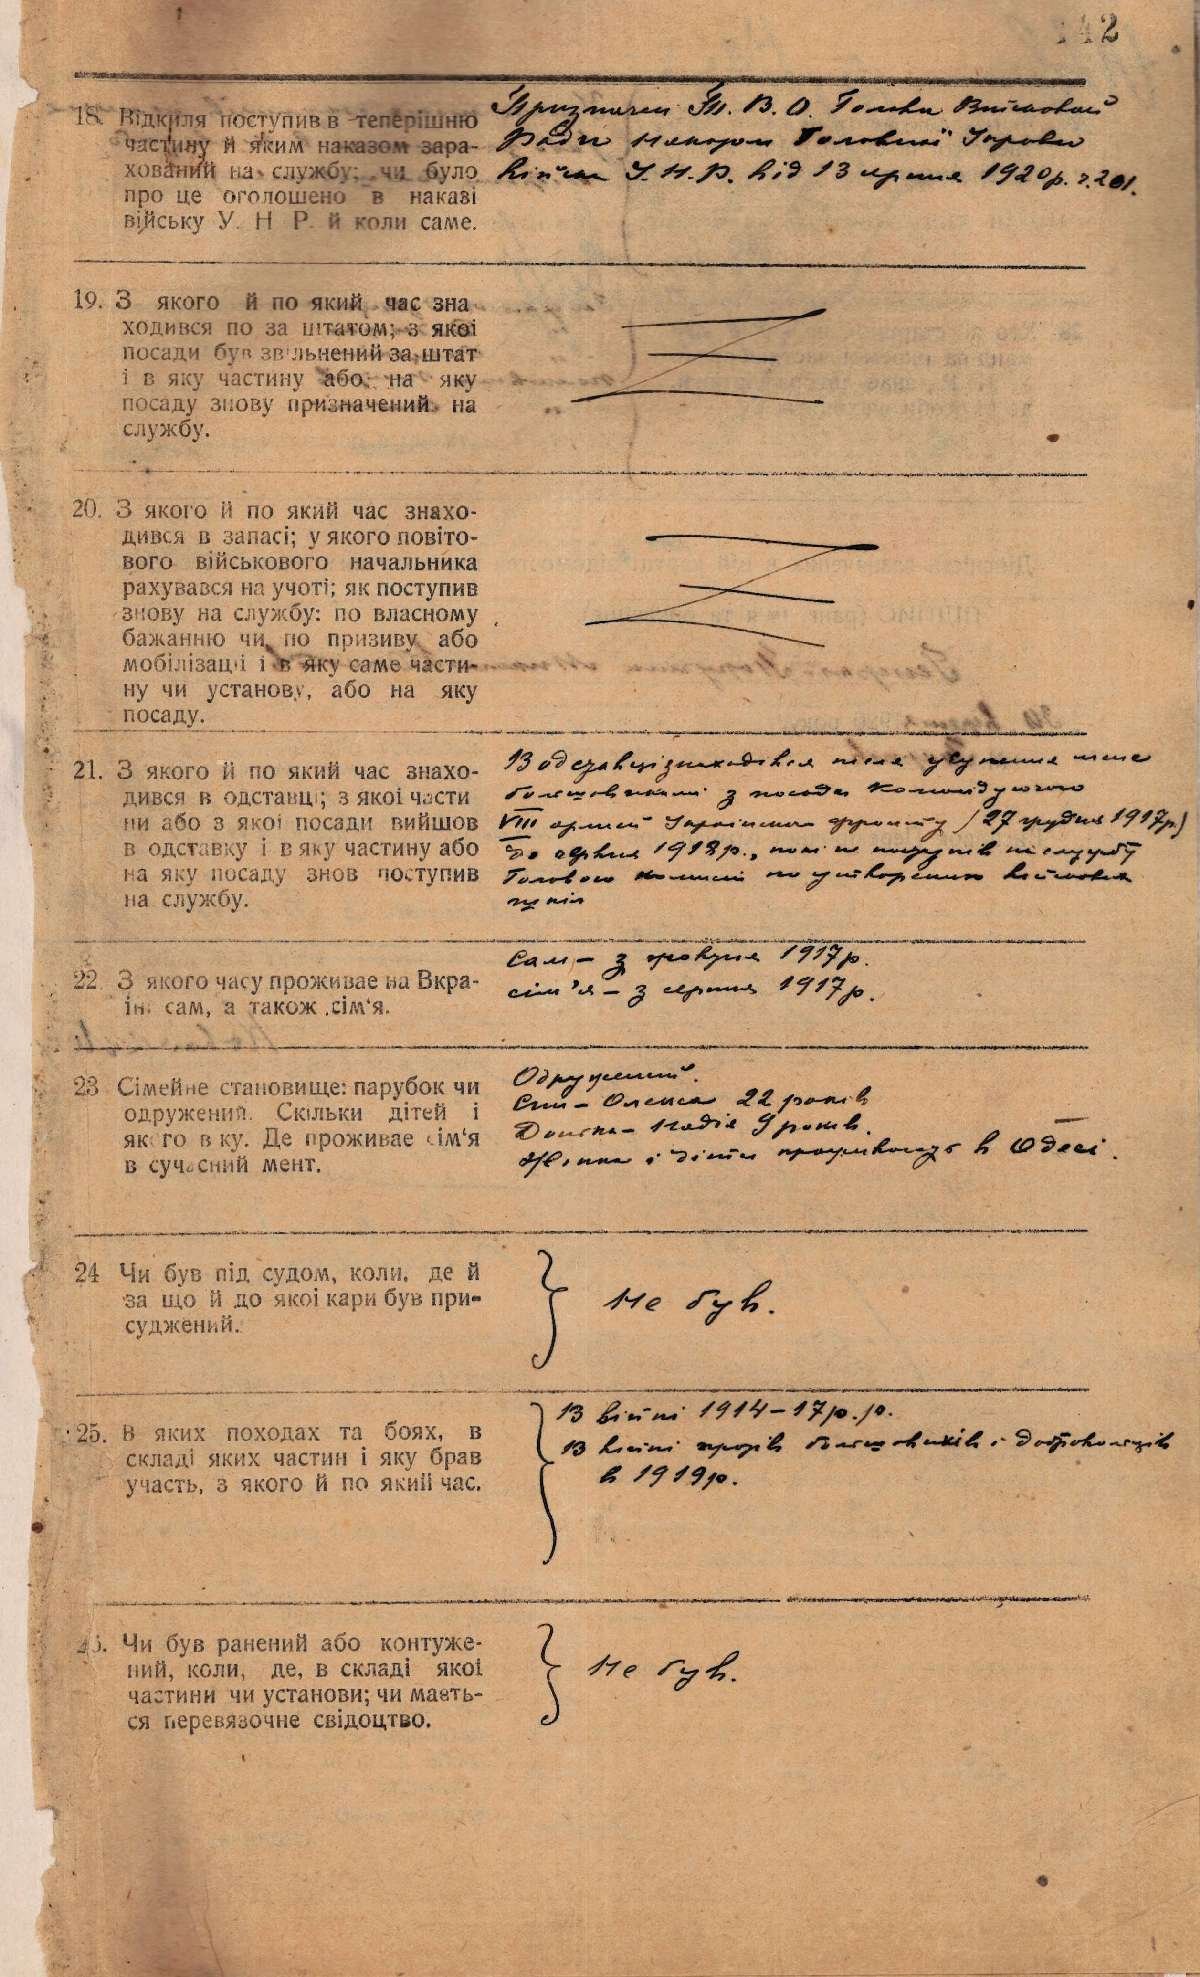 Реєстраційна картка Миколи Юнаківа. 30 вересня 1920 р.